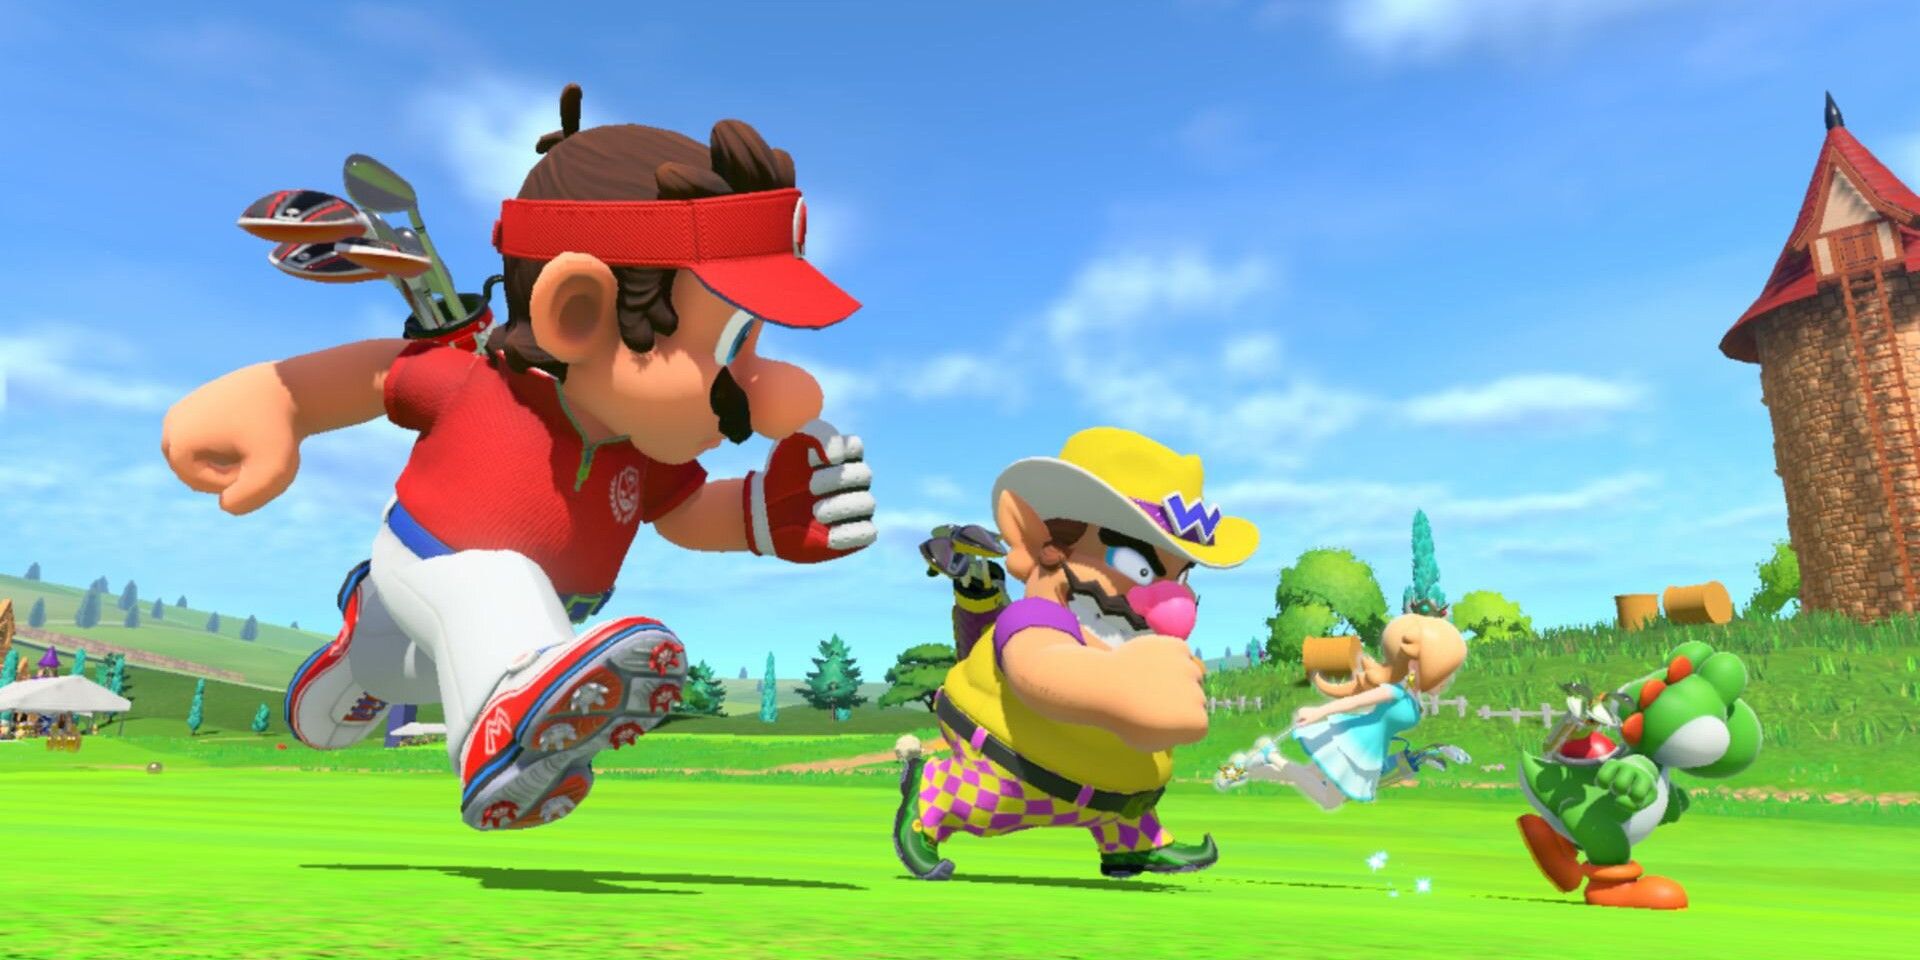 Mario Golf: Multijugador en pantalla dividida de Super Rush detallado por Nintendo